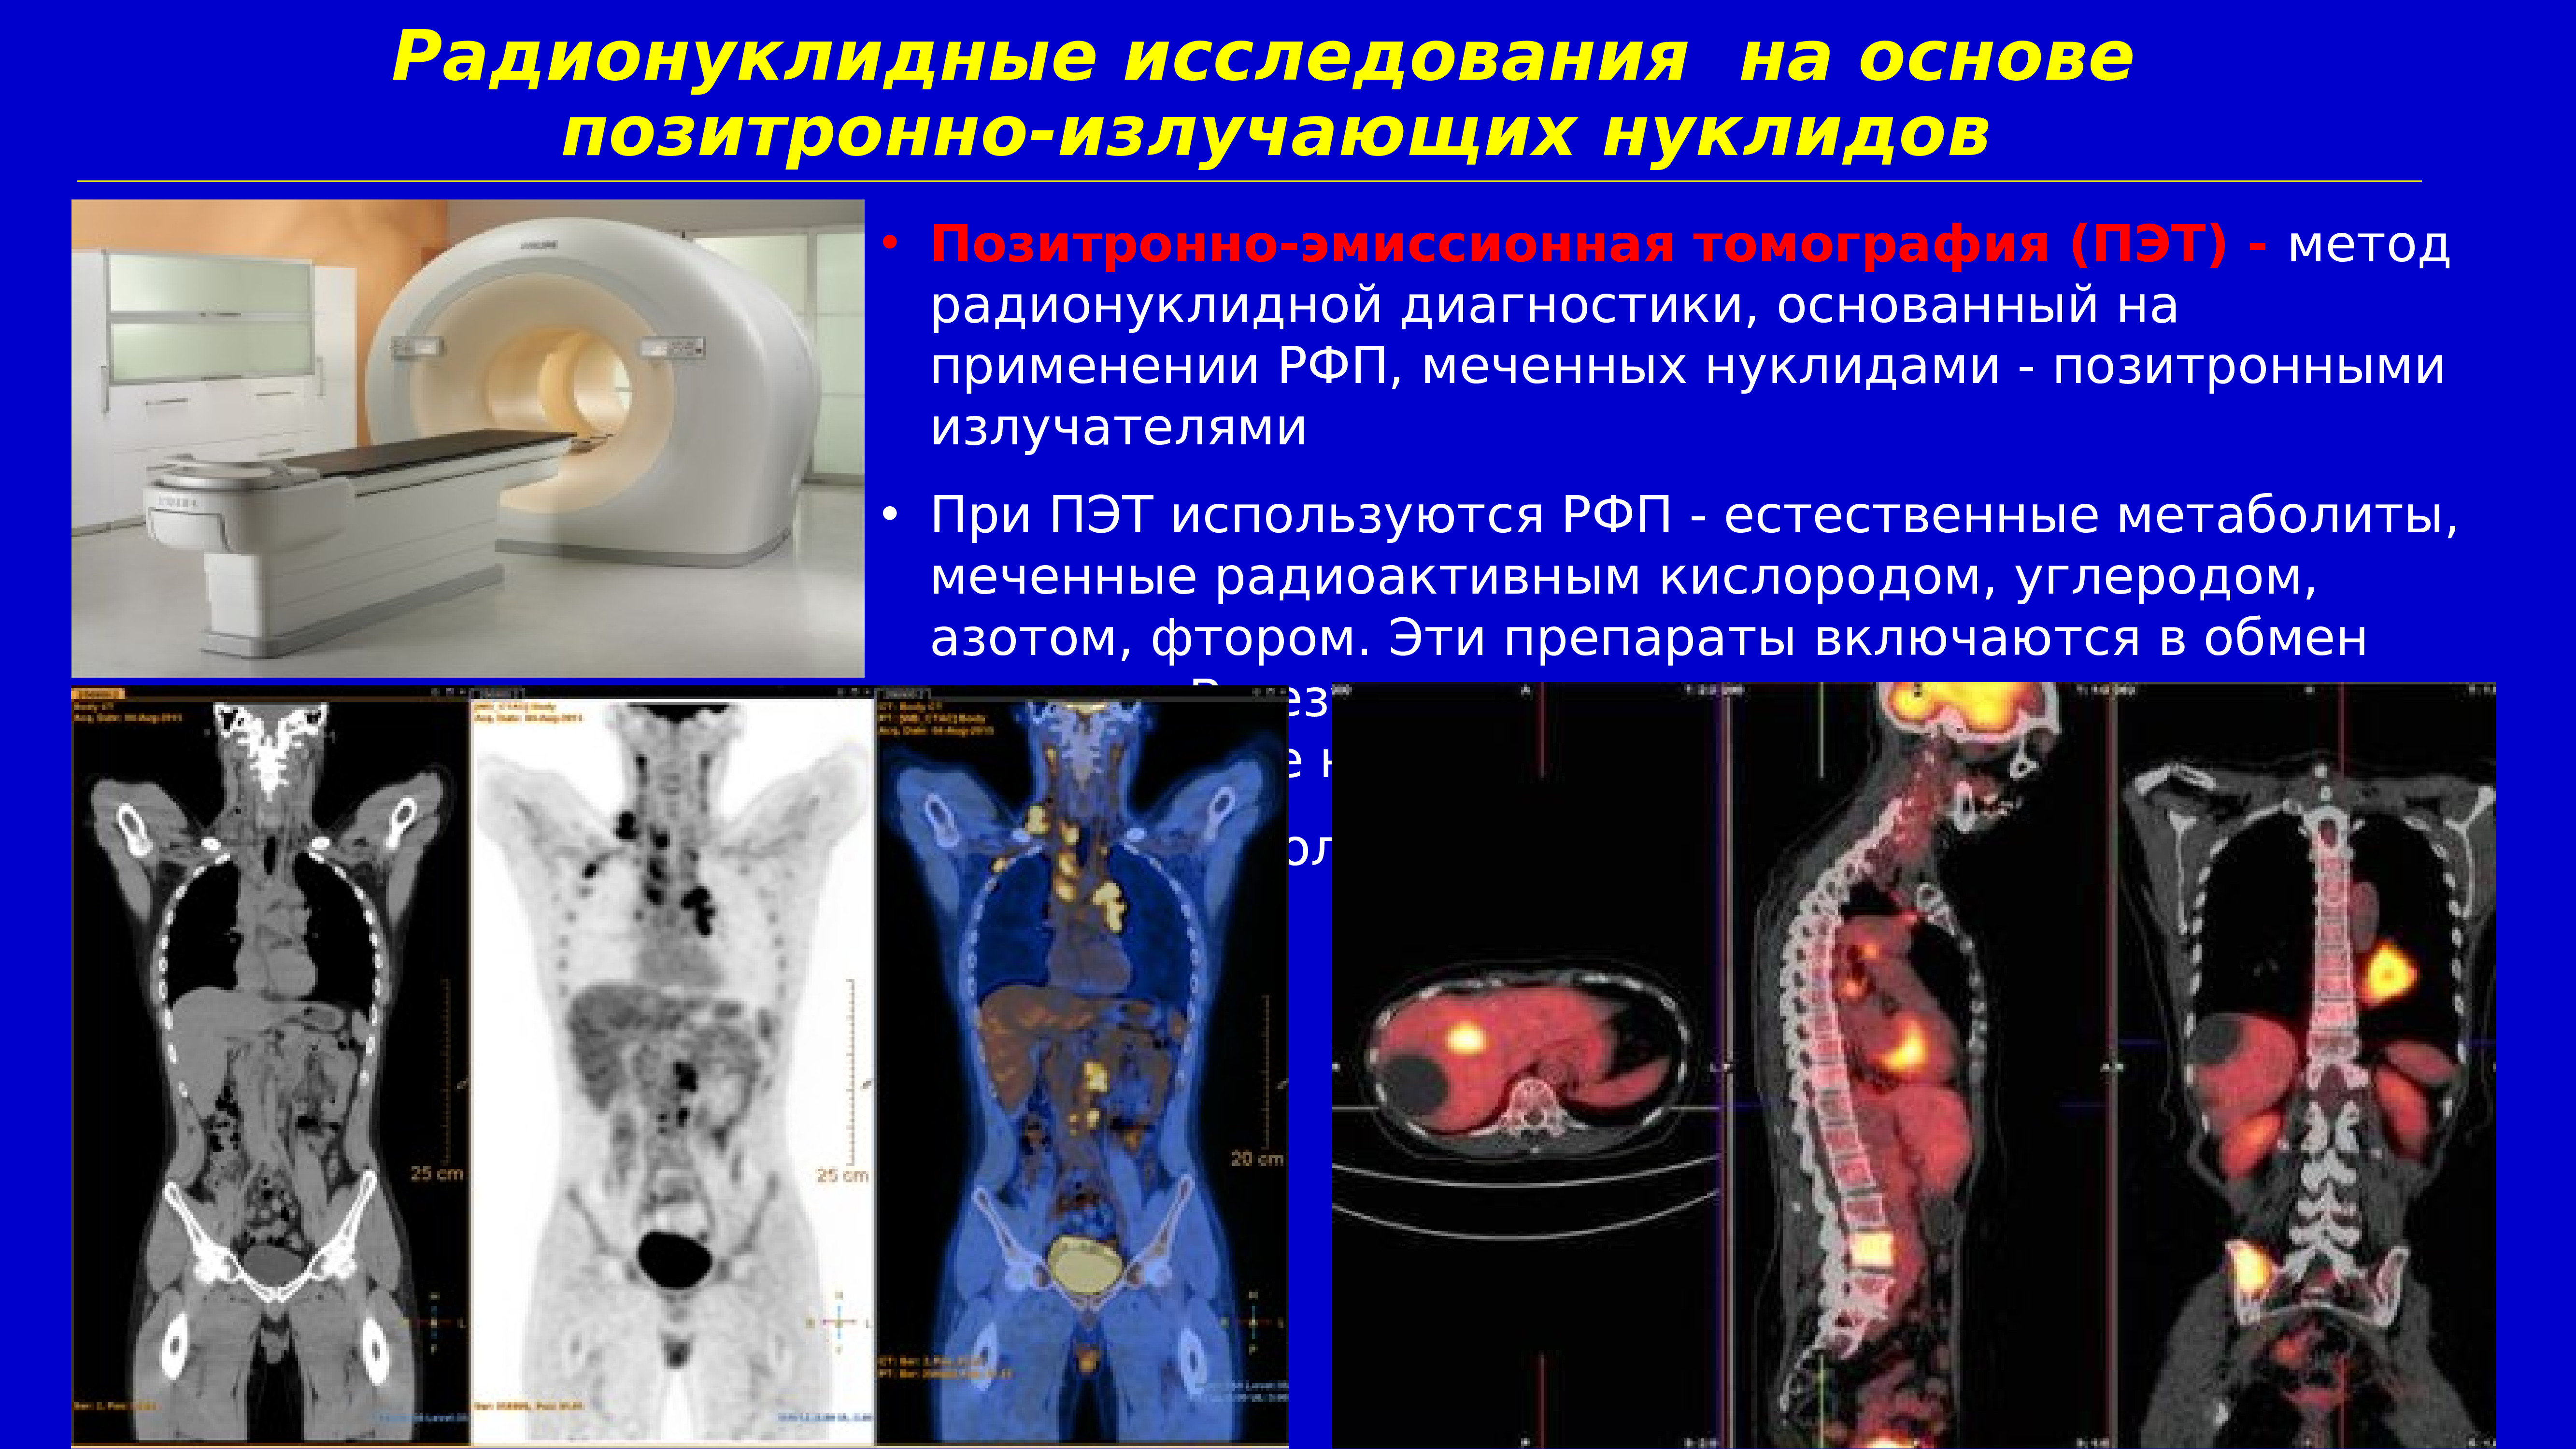 Рфп при пэт кт. Позитронно-эмиссионная томография (ПЭТ). ПЭТ кт костей онкология. ПЭТ лучевая диагностика.